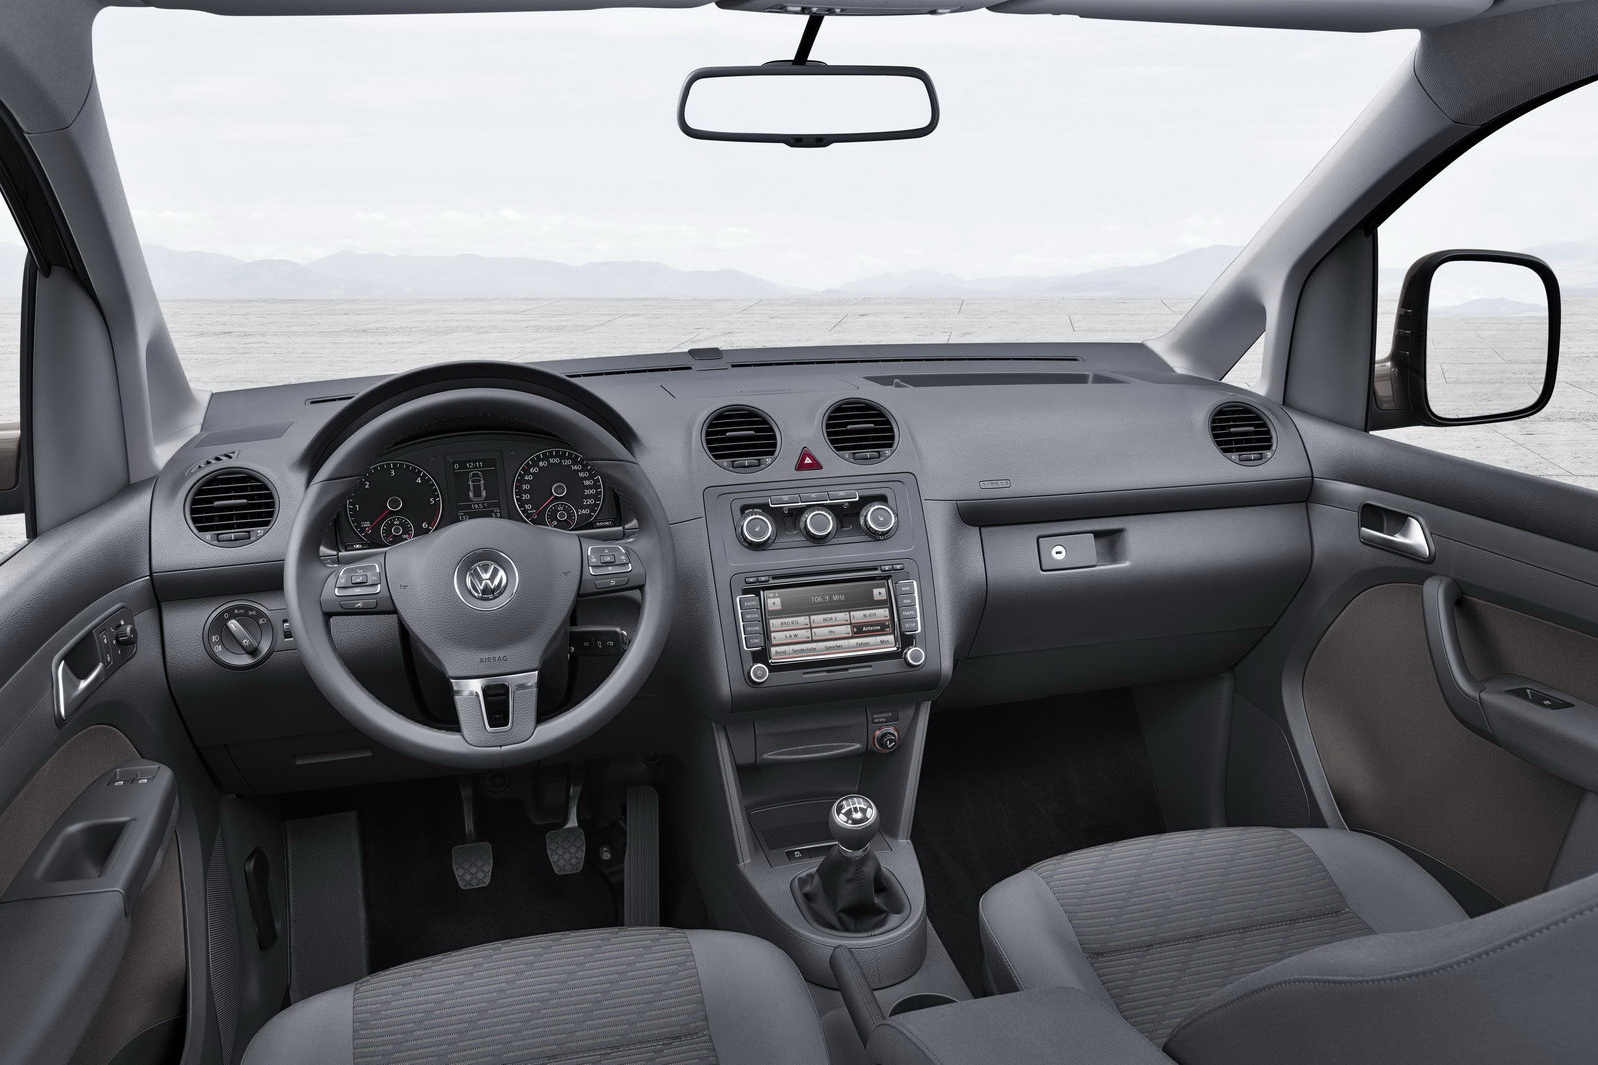 Volkswagen Caddy 1.2 TSI 105 hp MT Comfortline